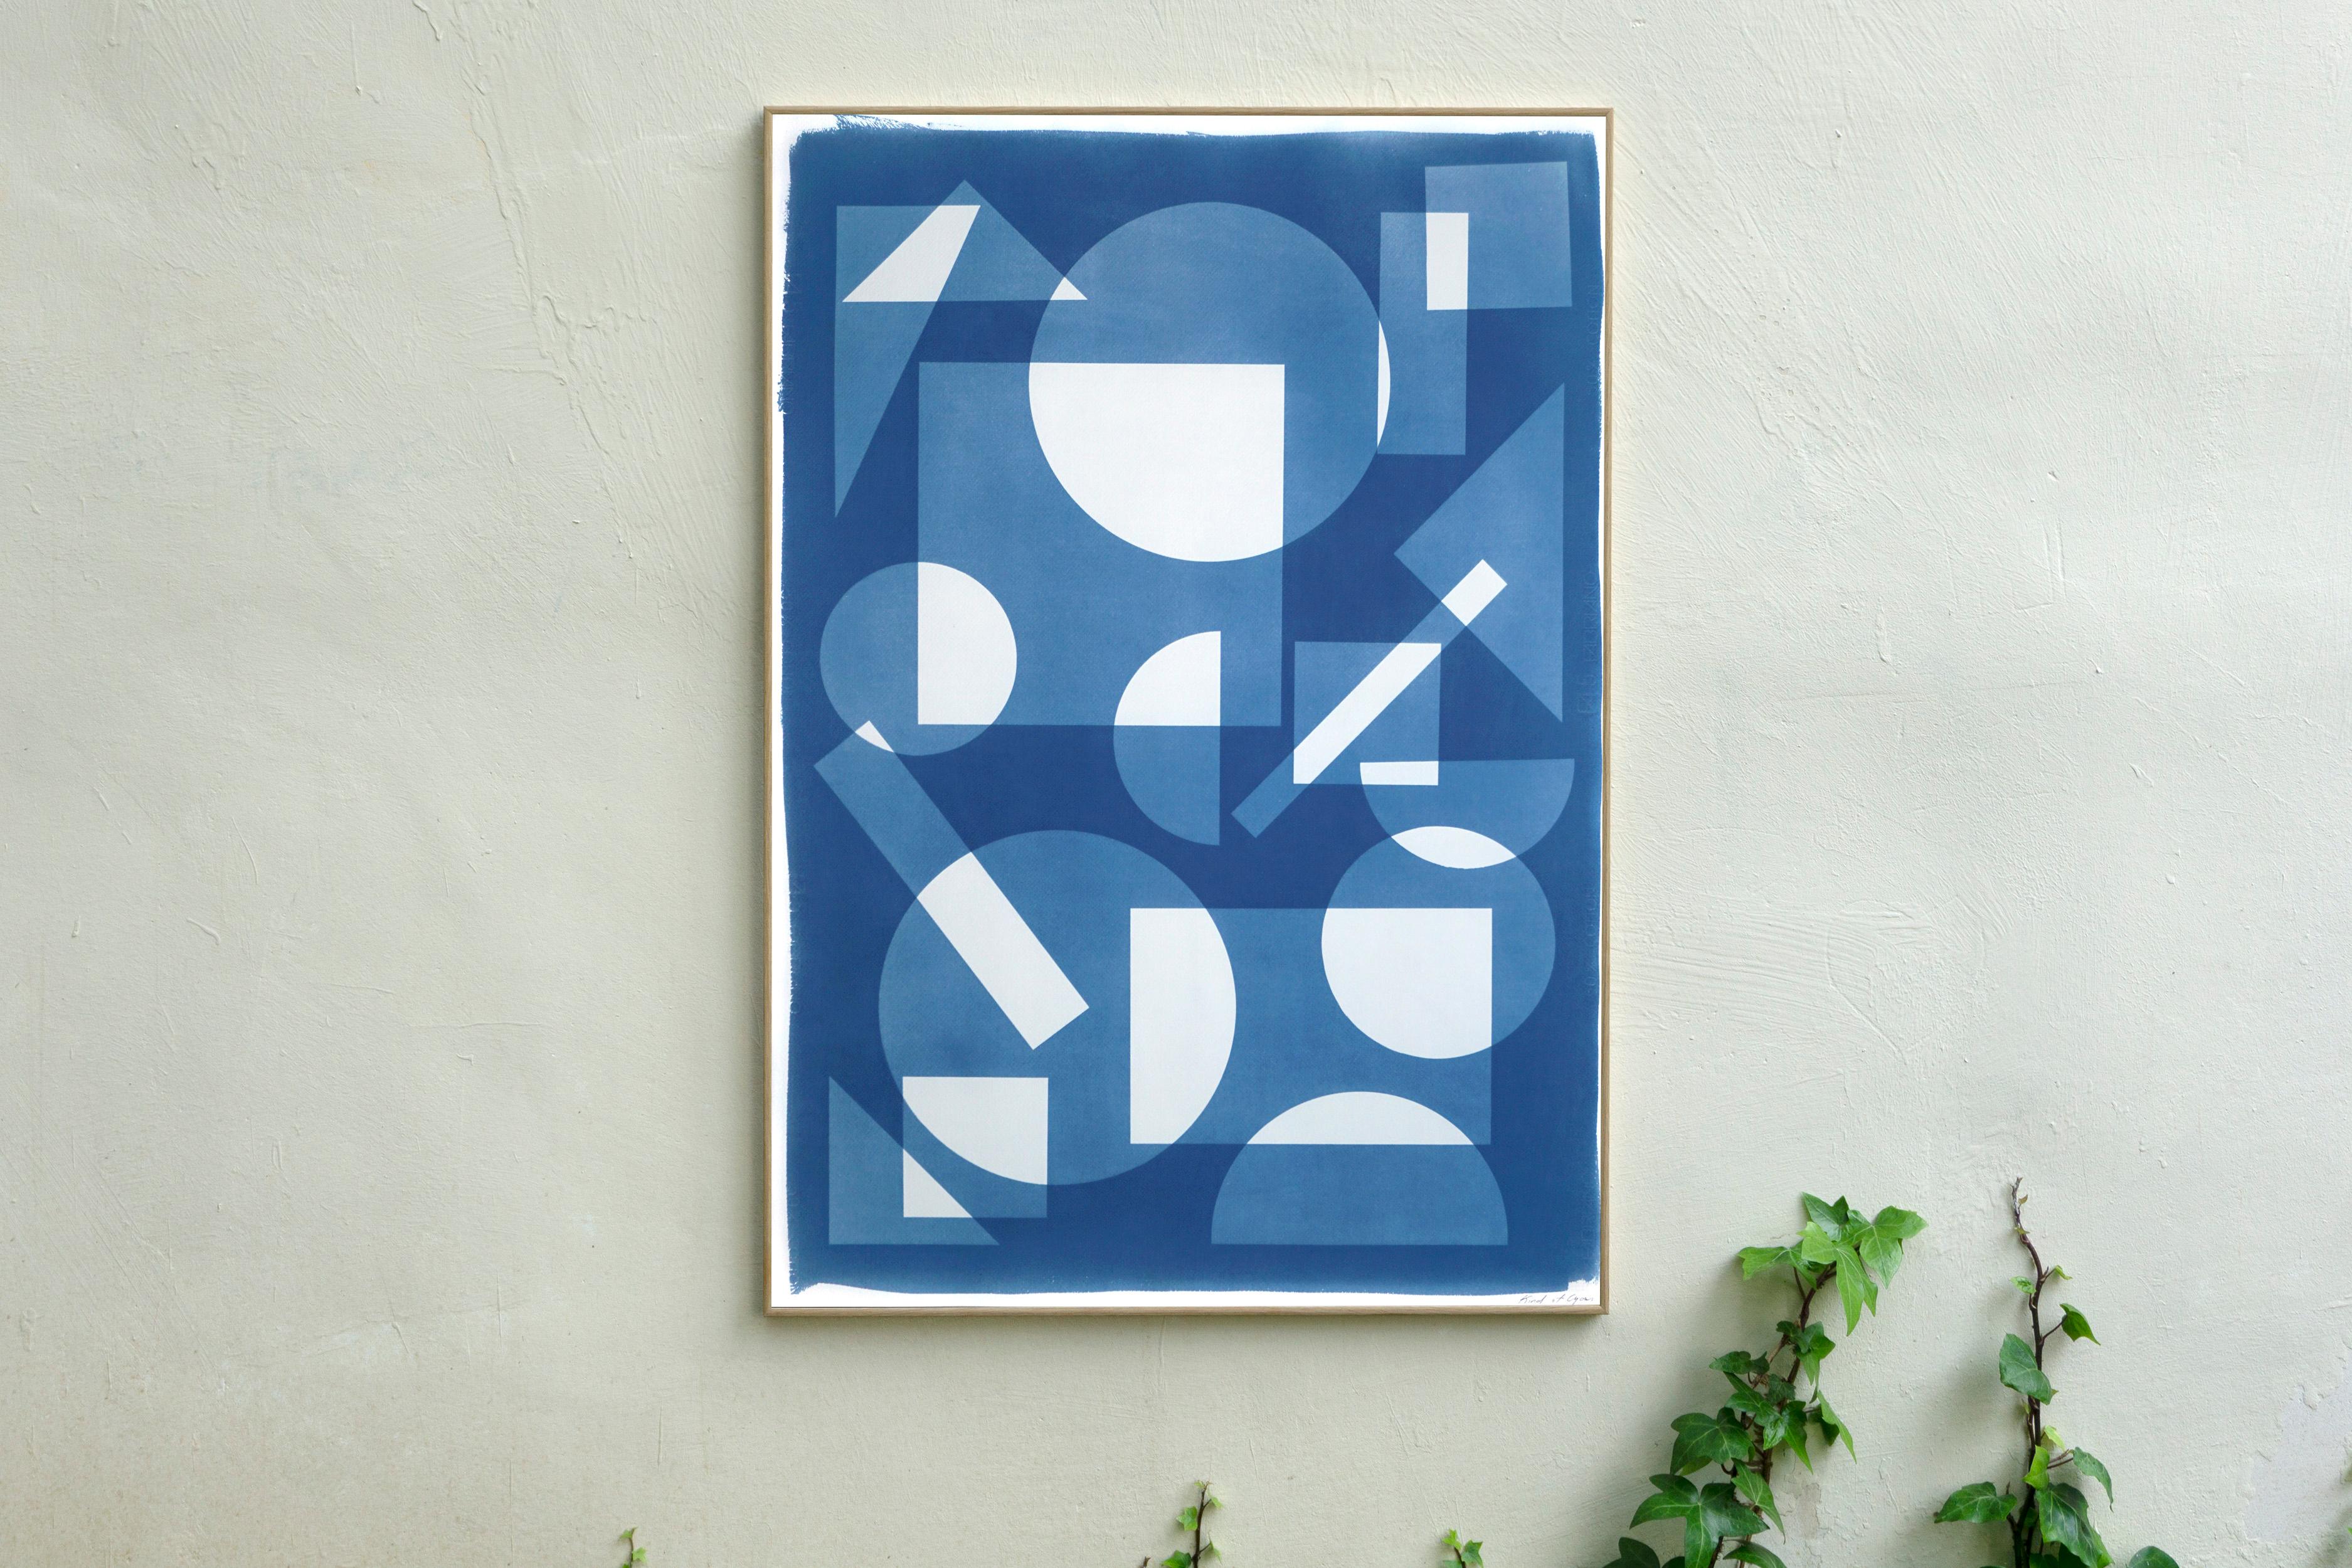 Konstruktivistische Monotypie in schwebenden Formen, weiße und blaue Geometrie (Konstruktivismus), Print, von Kind of Cyan